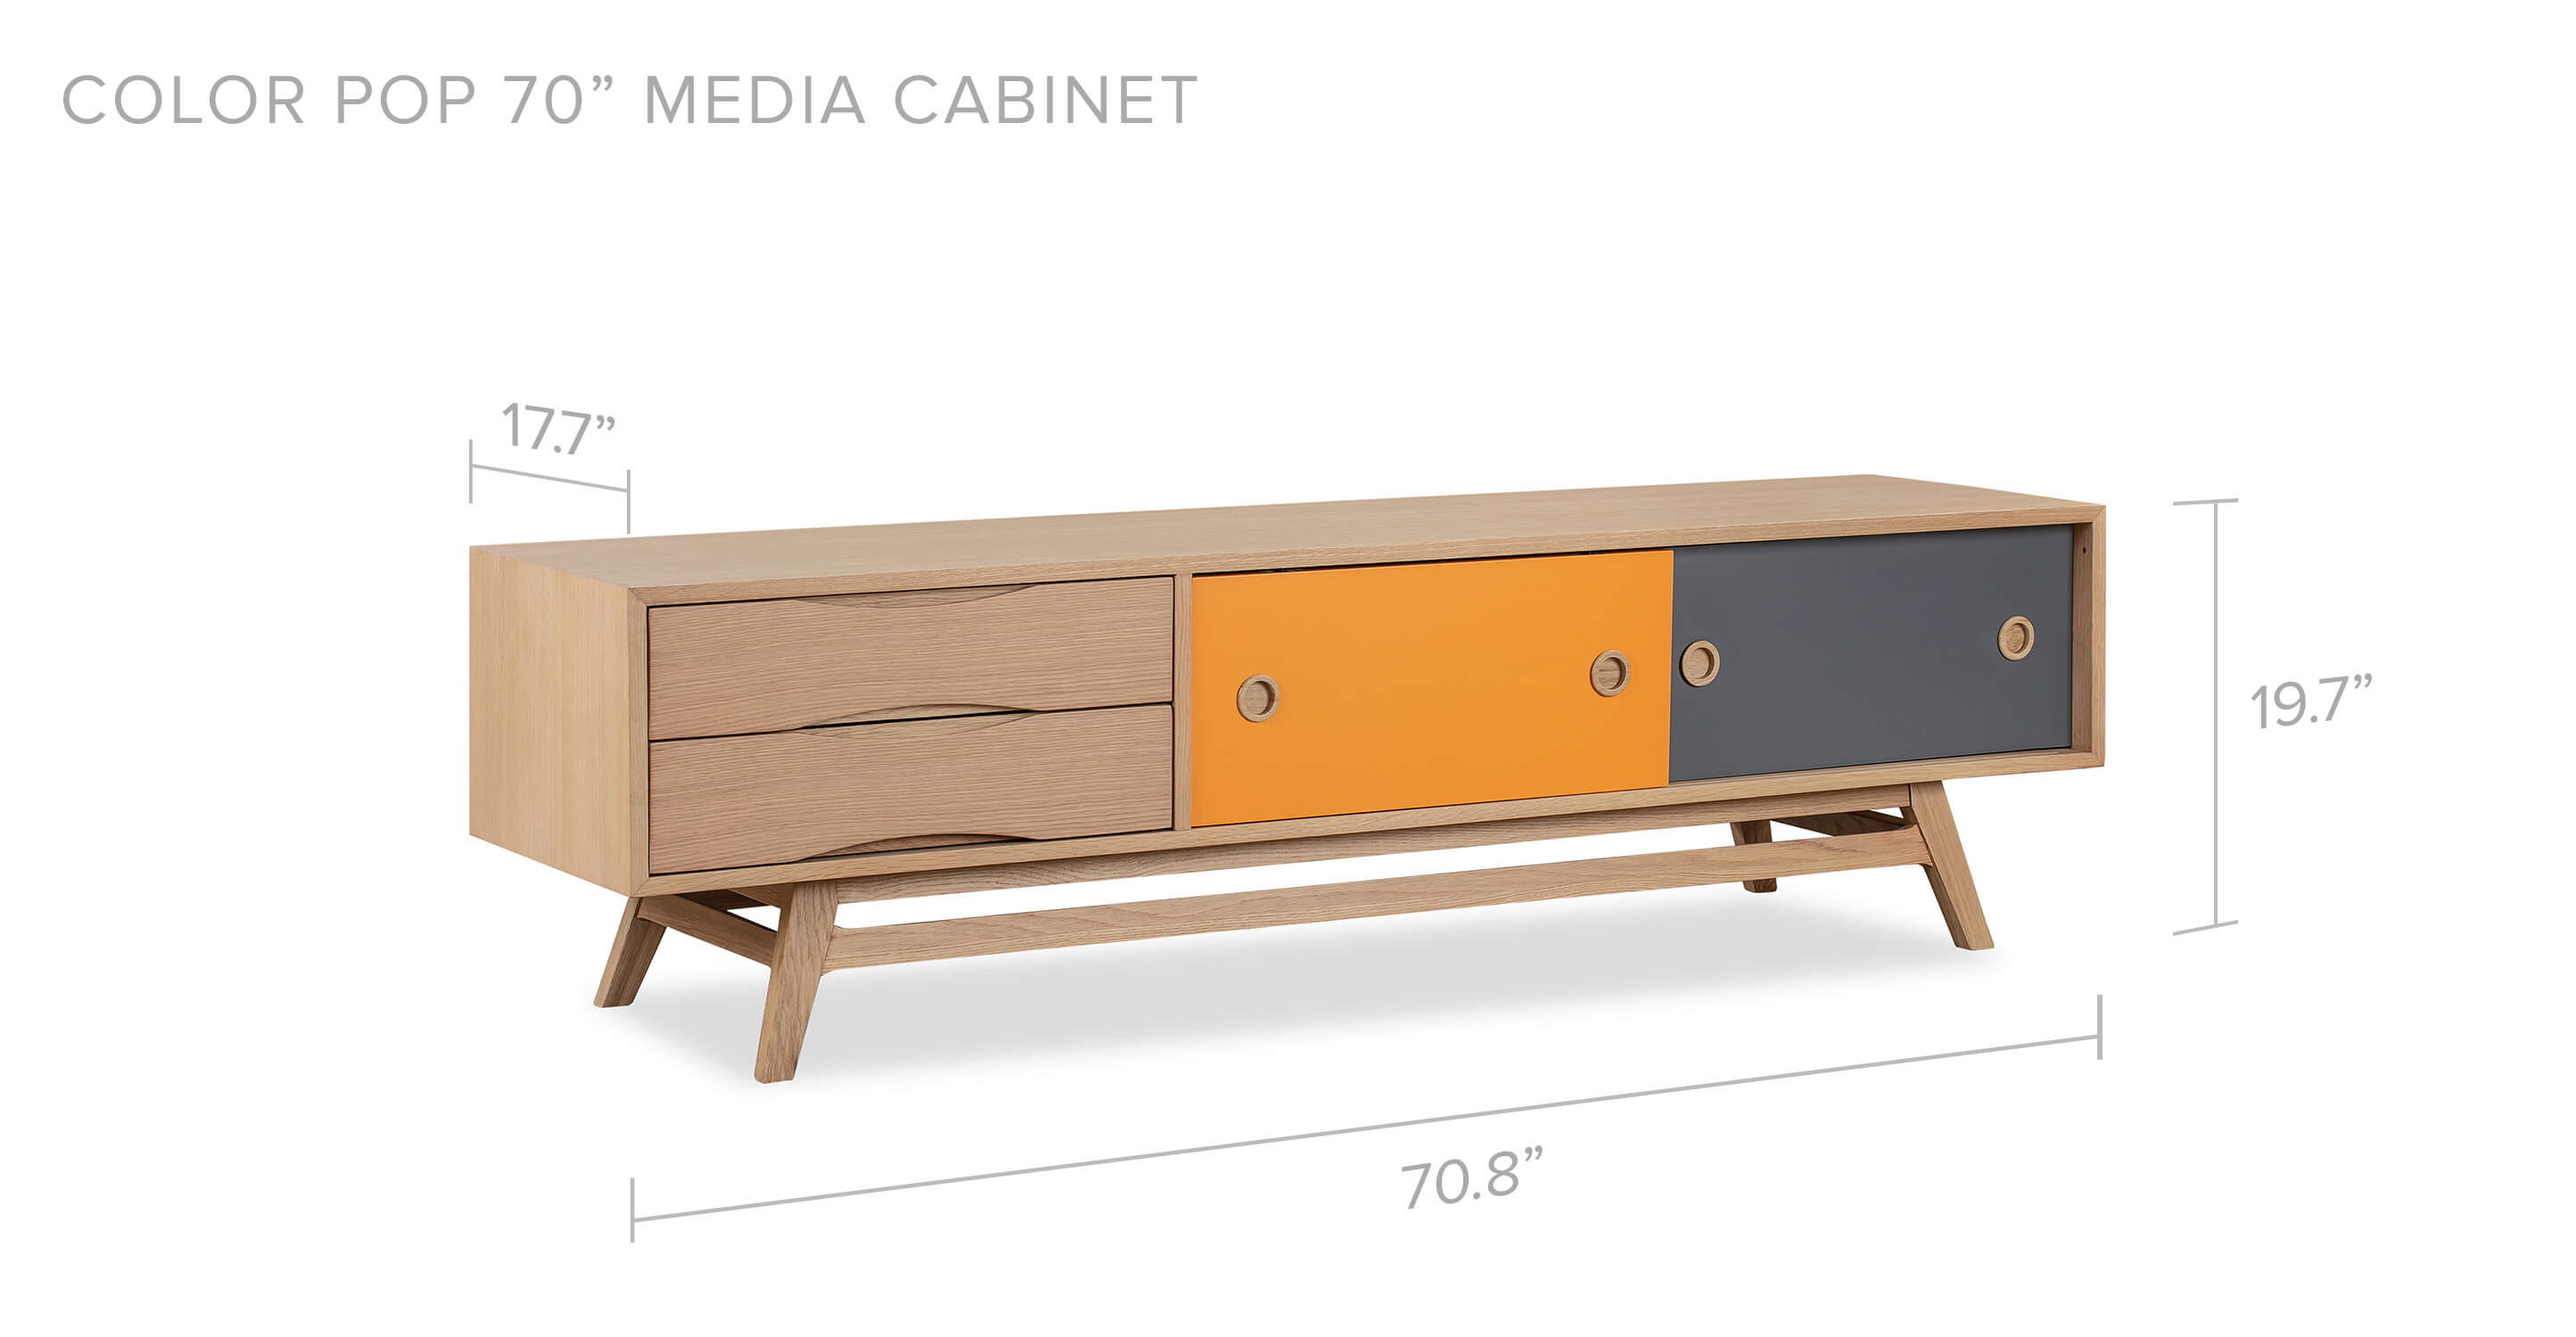 Color Pop 70" Media Cabinet Orange Charcoal Natural Oak